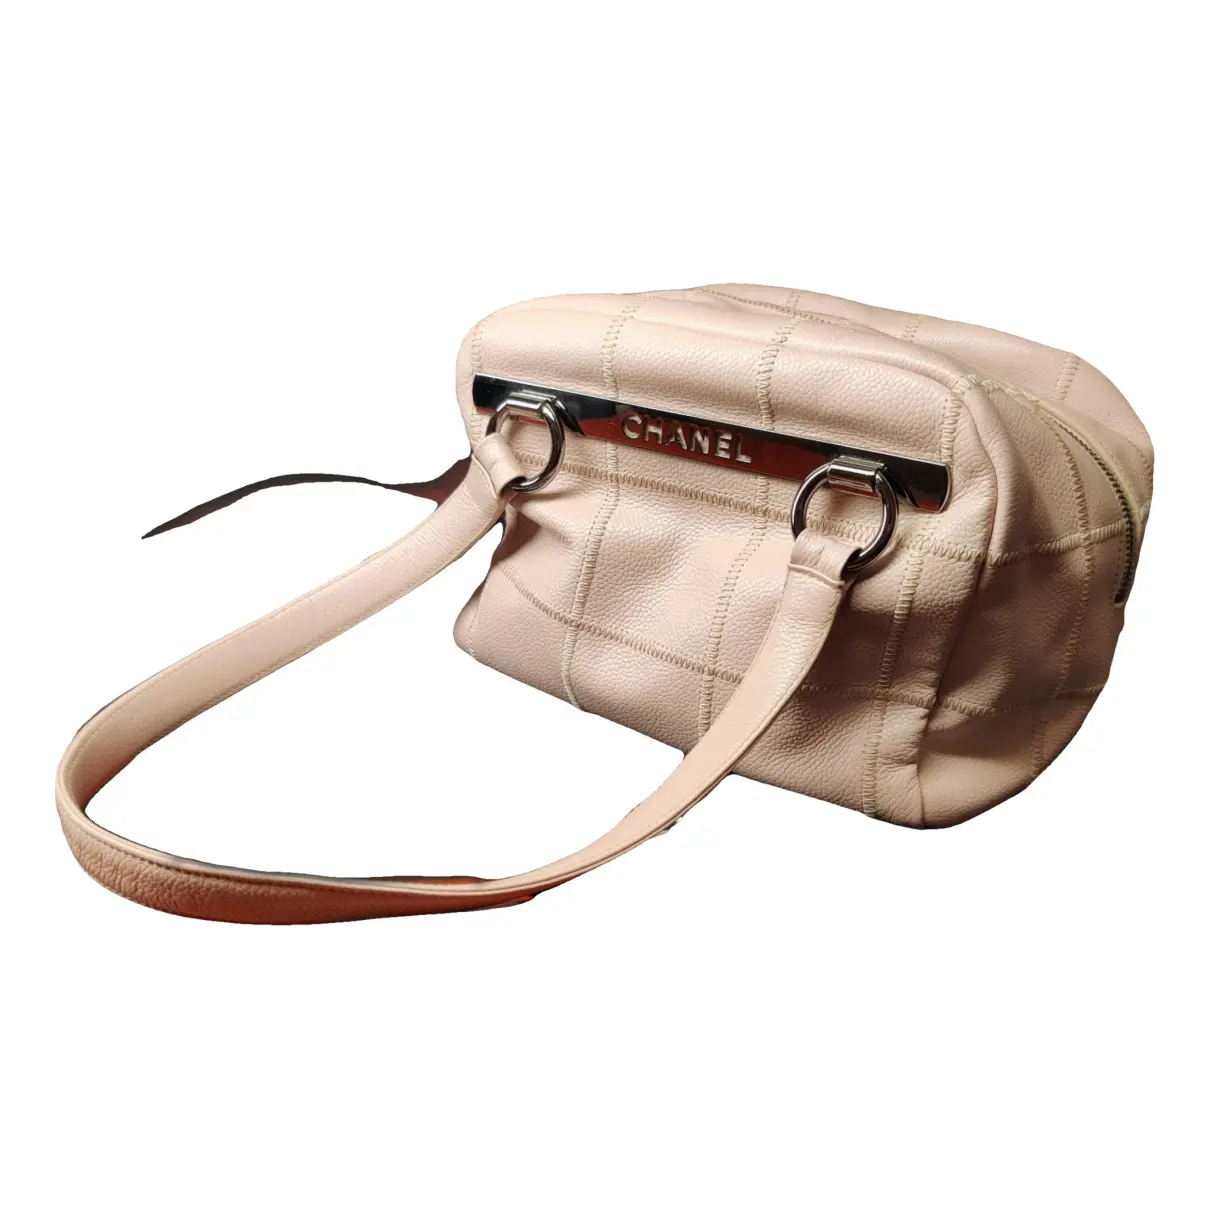 Bowling Bag leather handbag